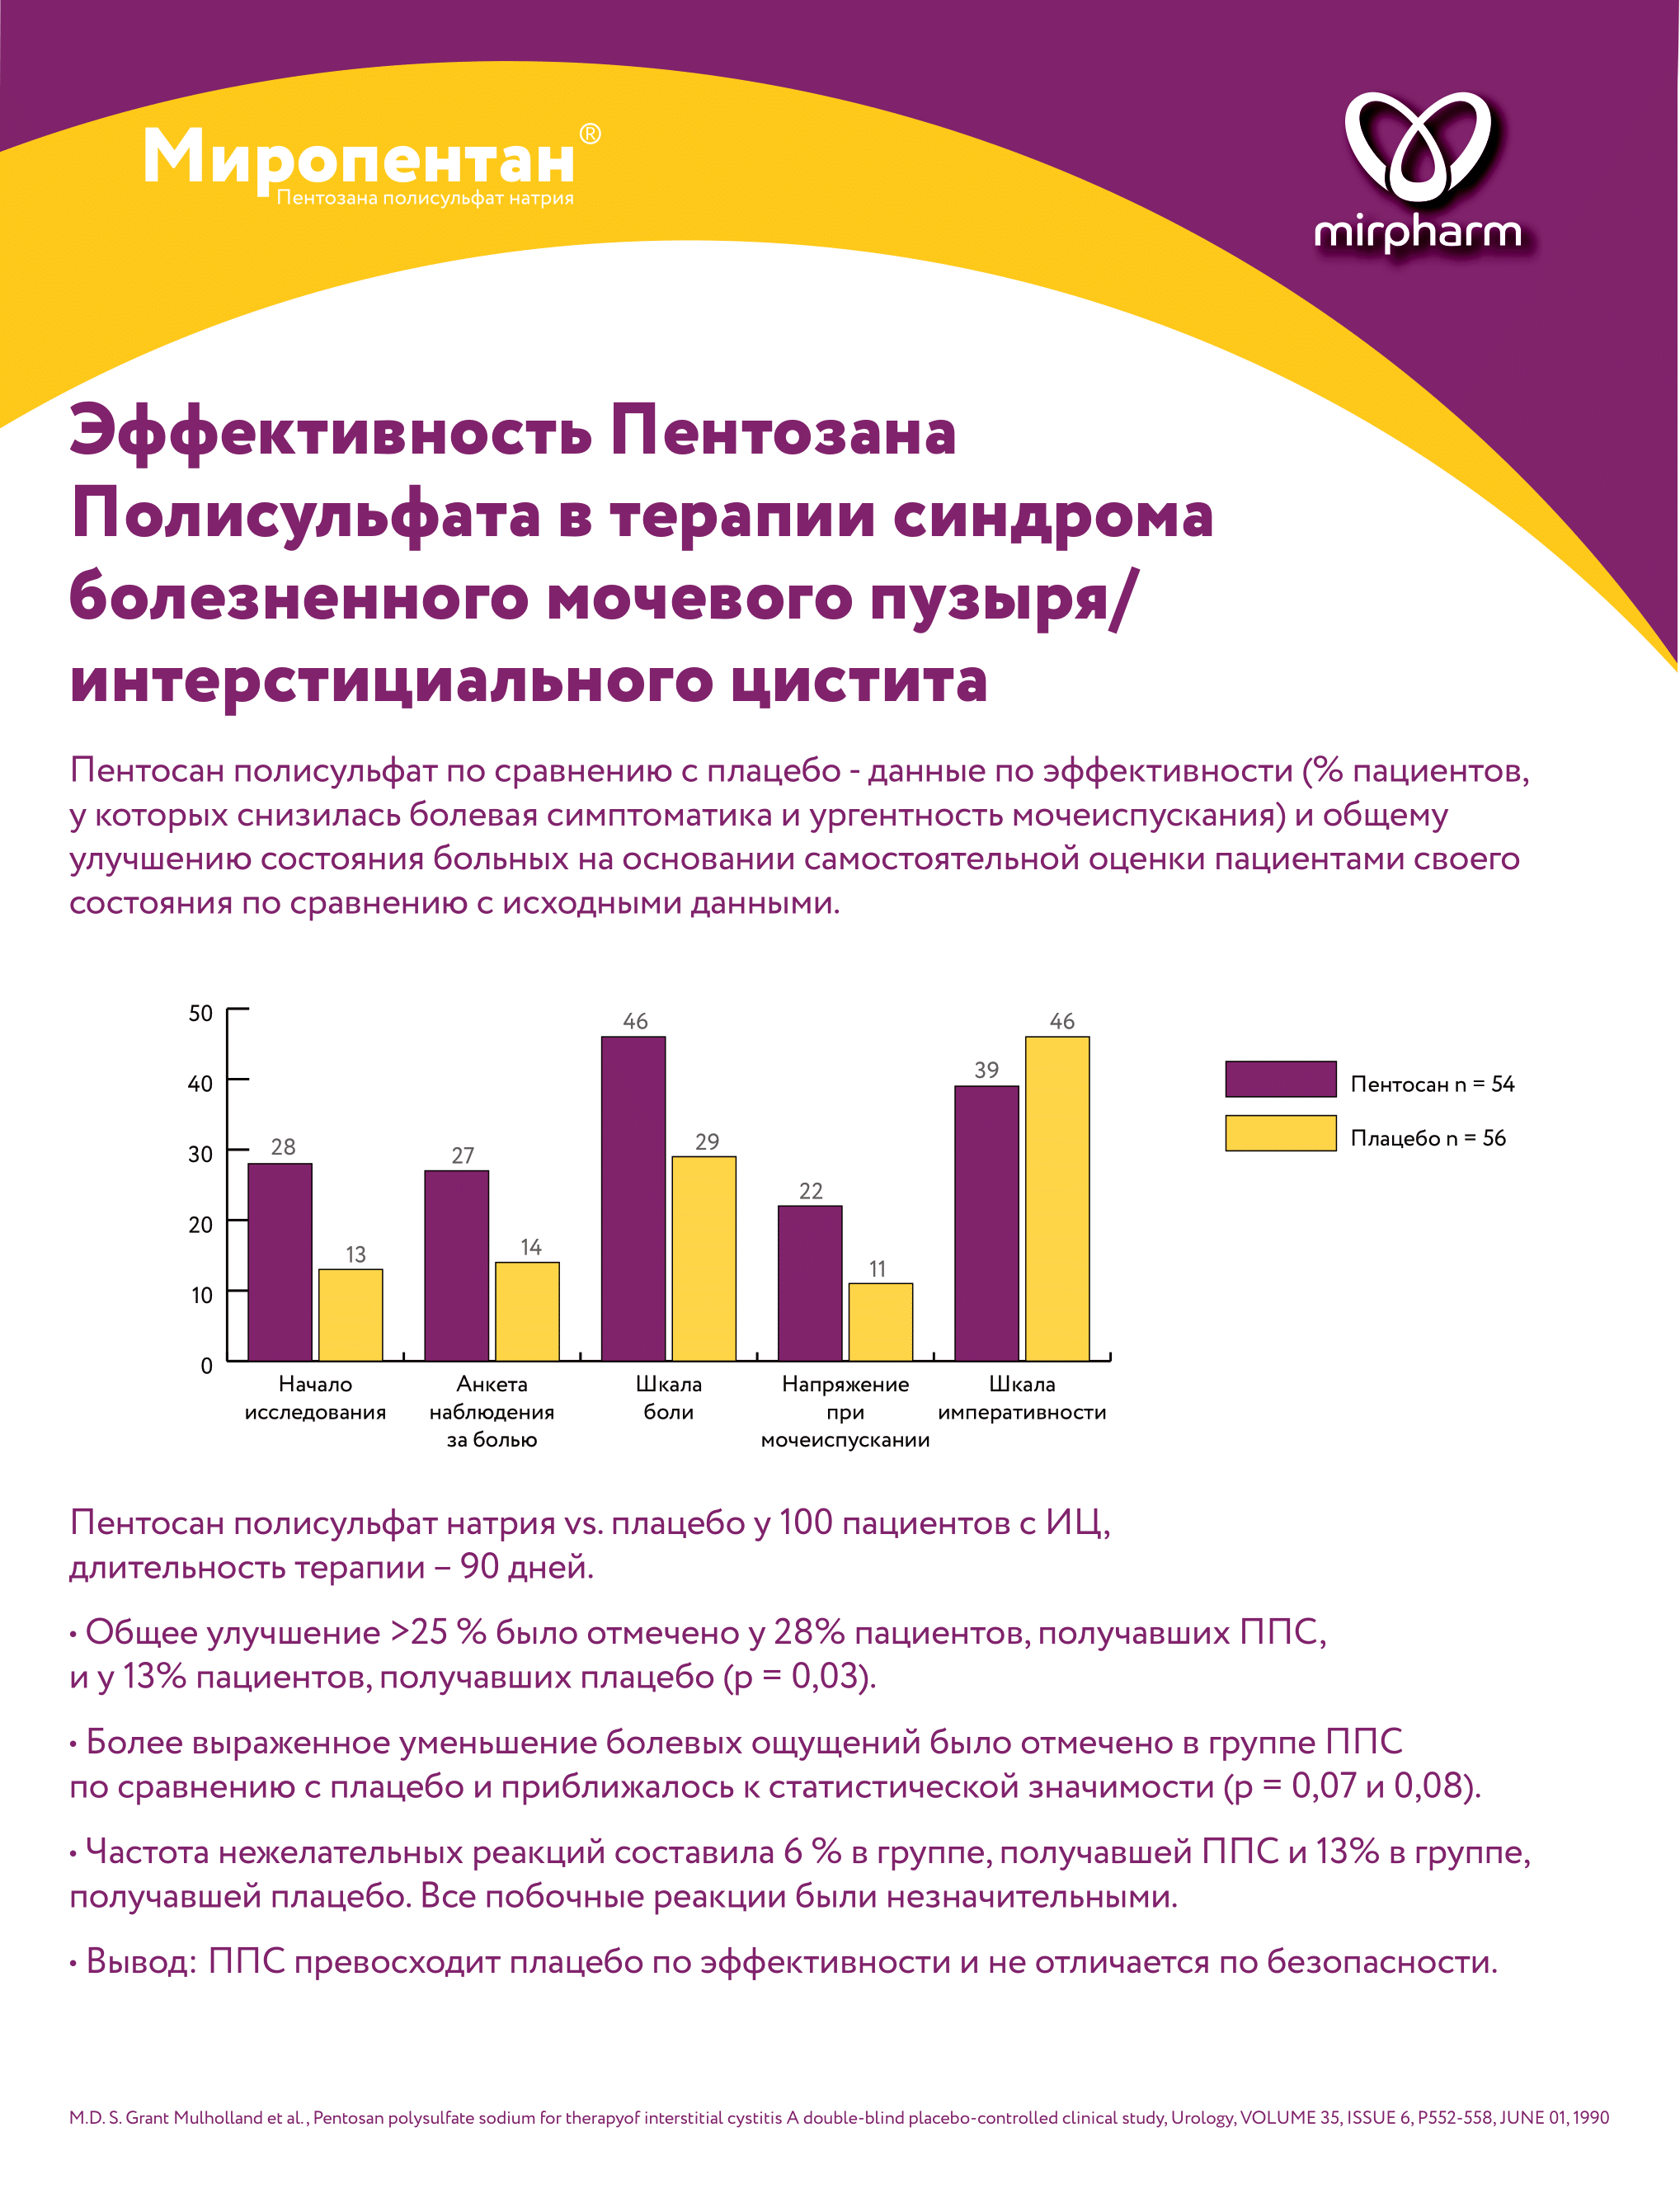 Зарегистрирован первый в России препарат для лечения ИЦ